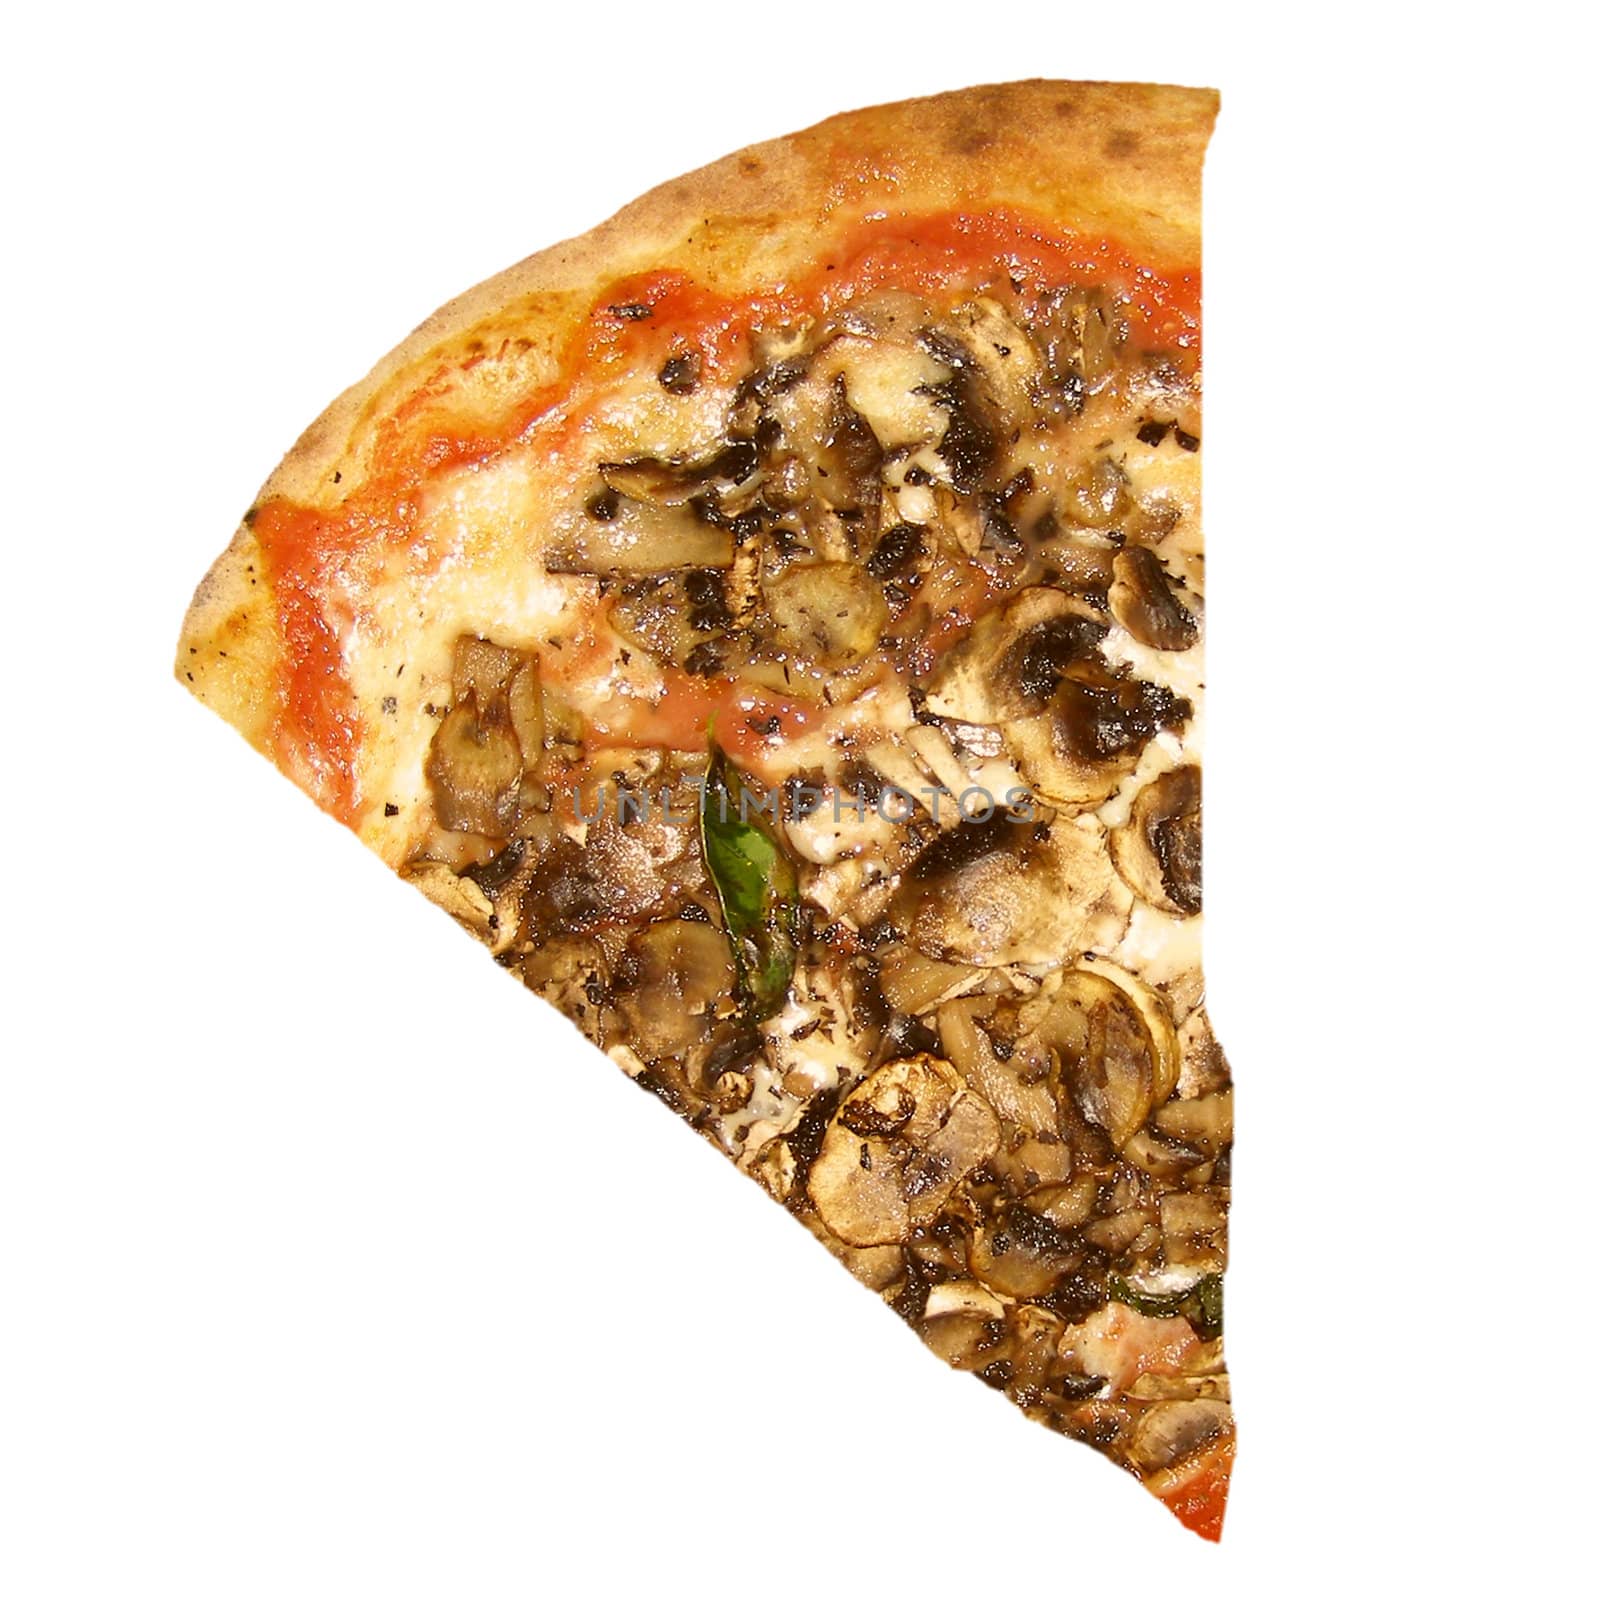 Slice of mushroom pizza